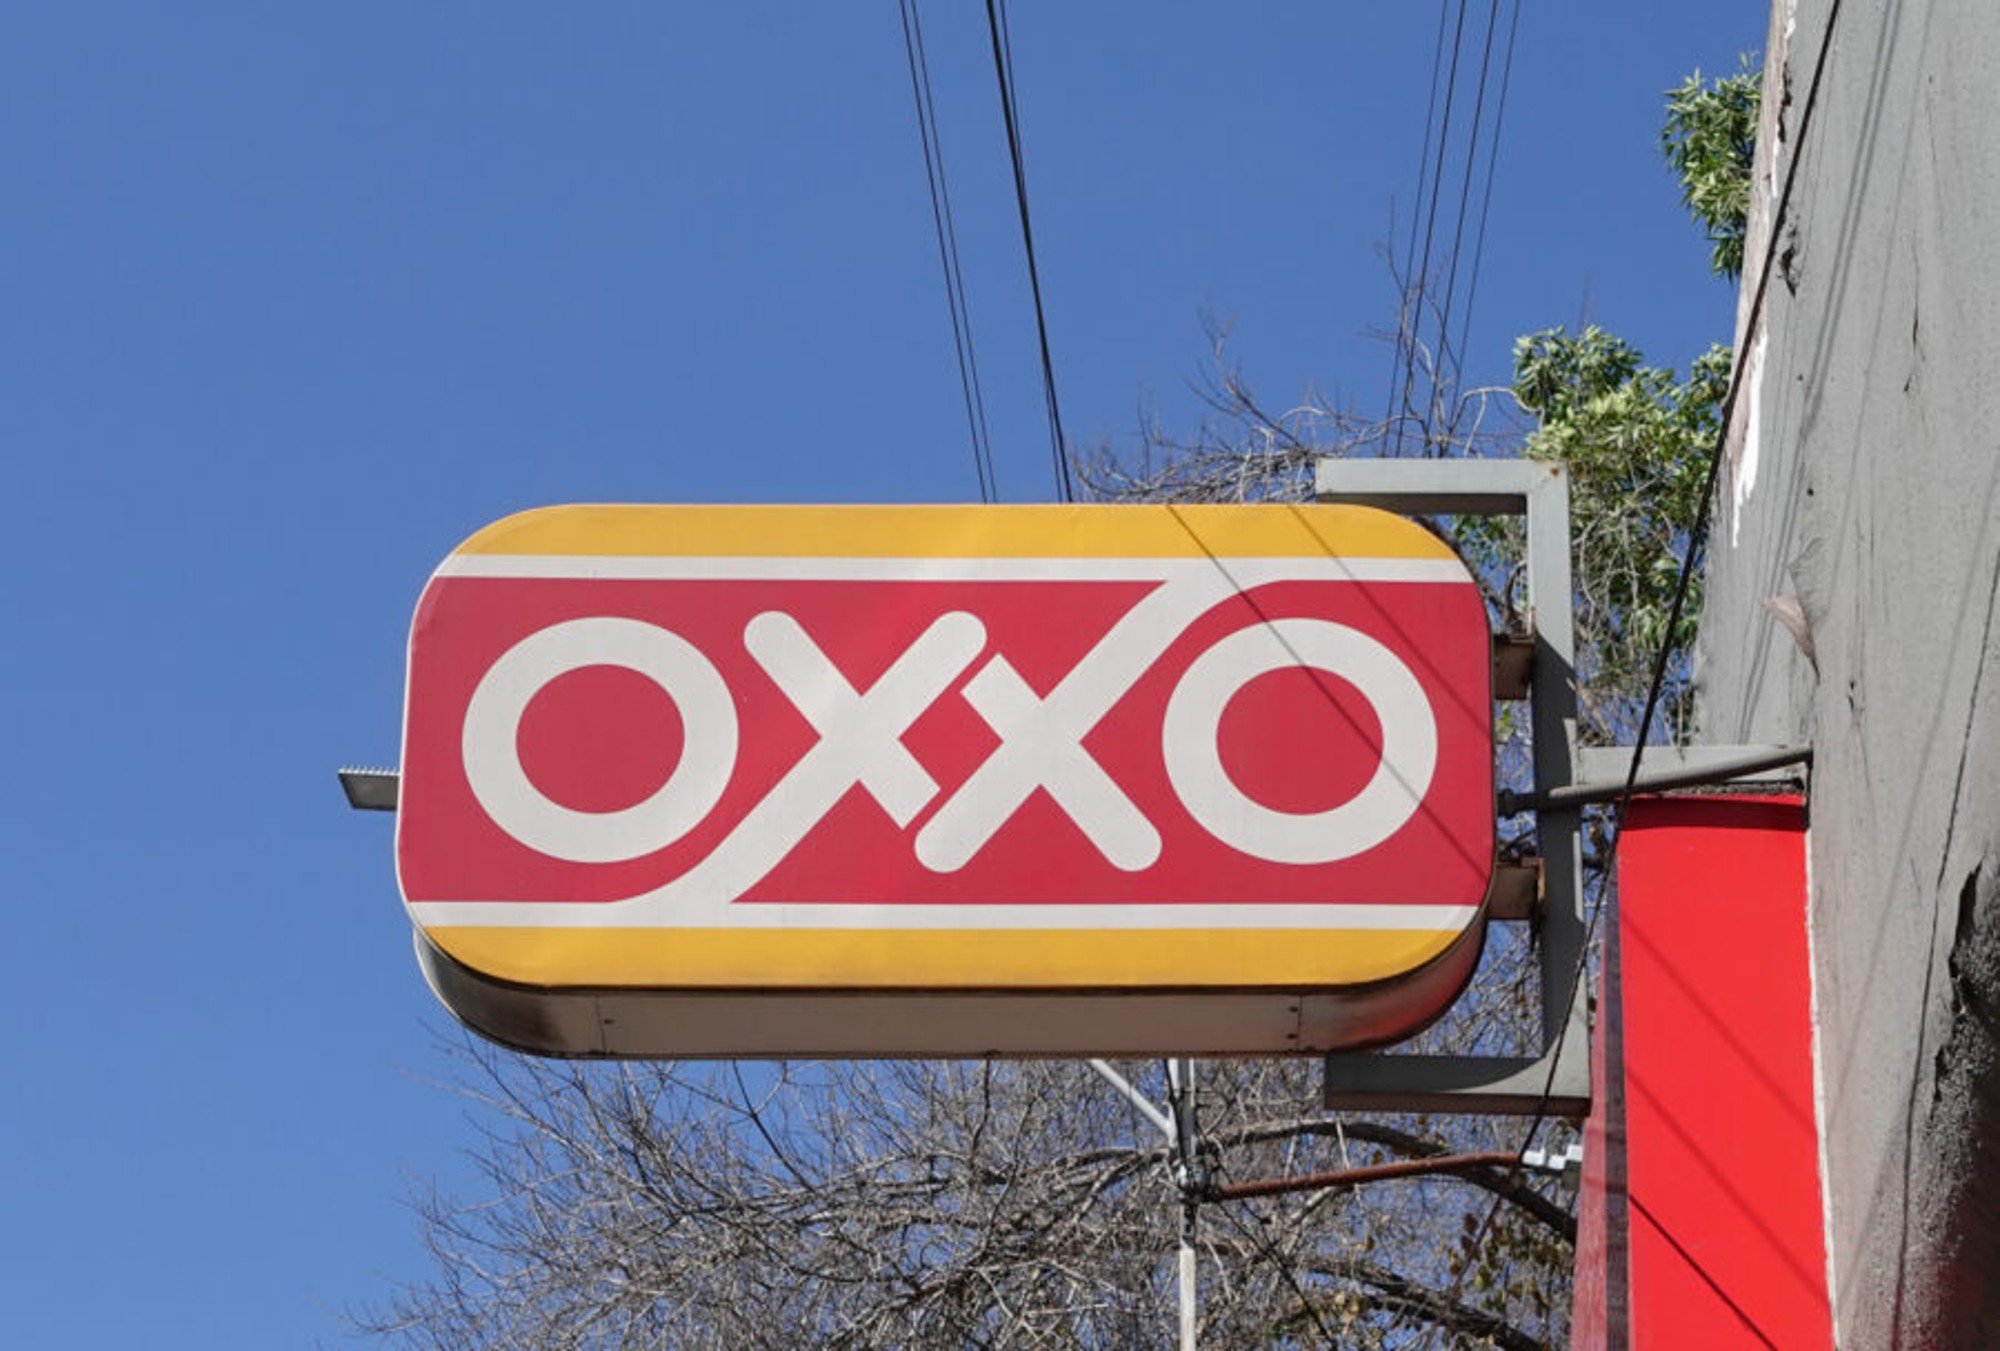 ¿Qué te parece el logo del Oxxo?